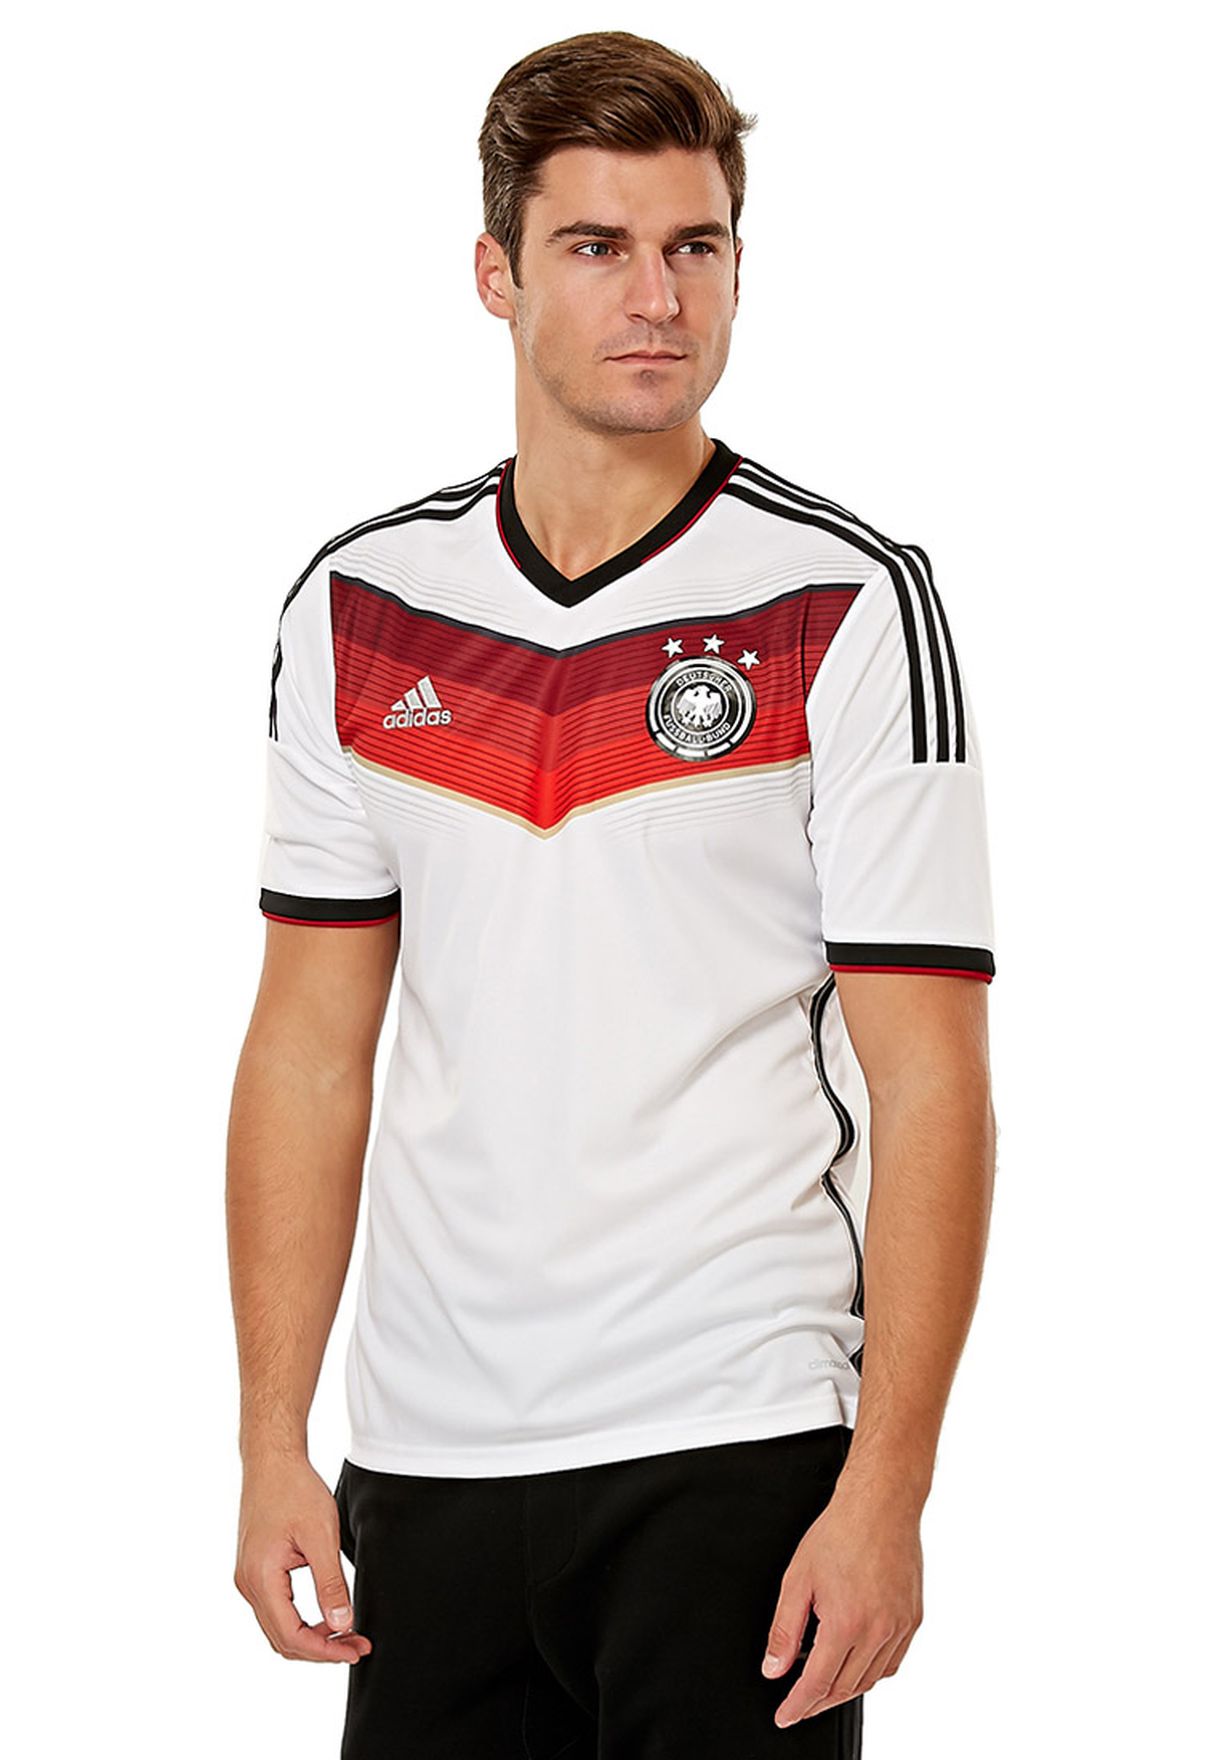 Адидас футболка сборной Германии 2014